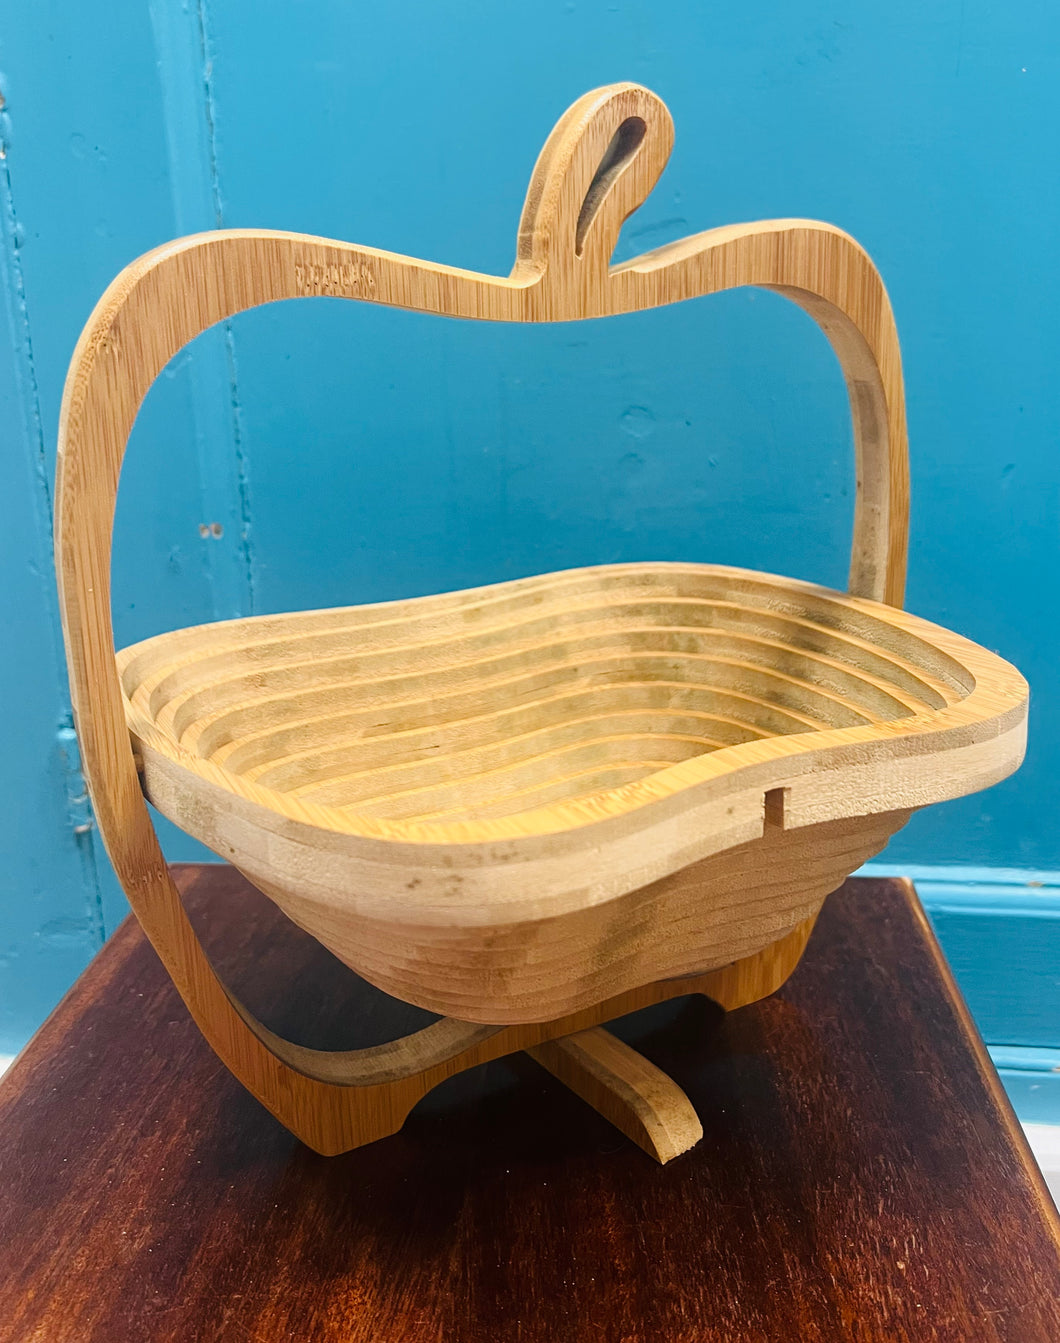 Basged pren Vintage dal afalau sydd yn plygu / Vintage fold out wooden apple basket